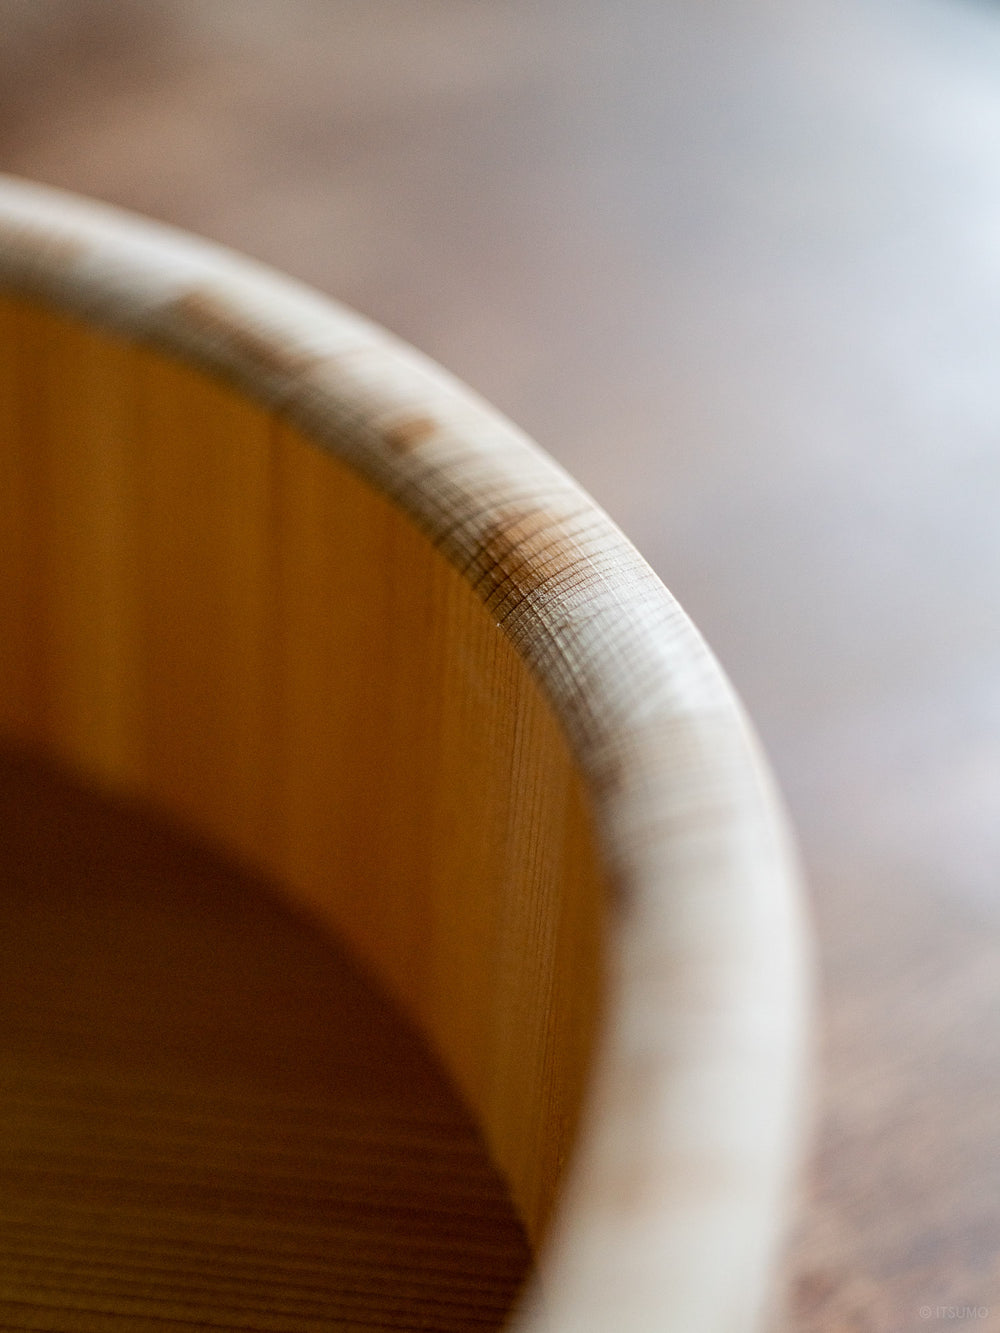 Azmaya kiso sawara sushi rice mixing bowl rounded wood along the top